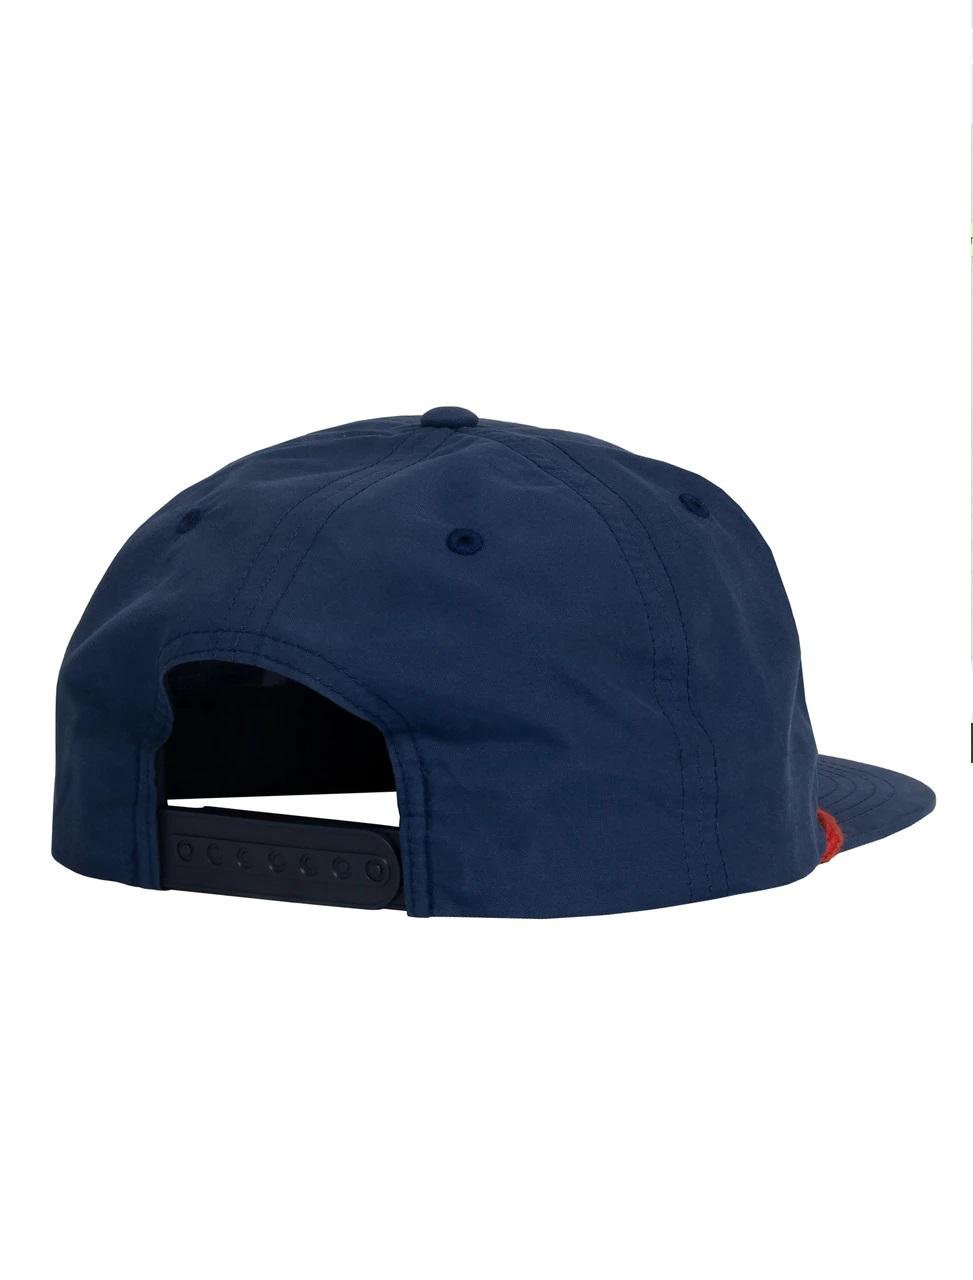 Gorro Kokatat Blue Puma Hat